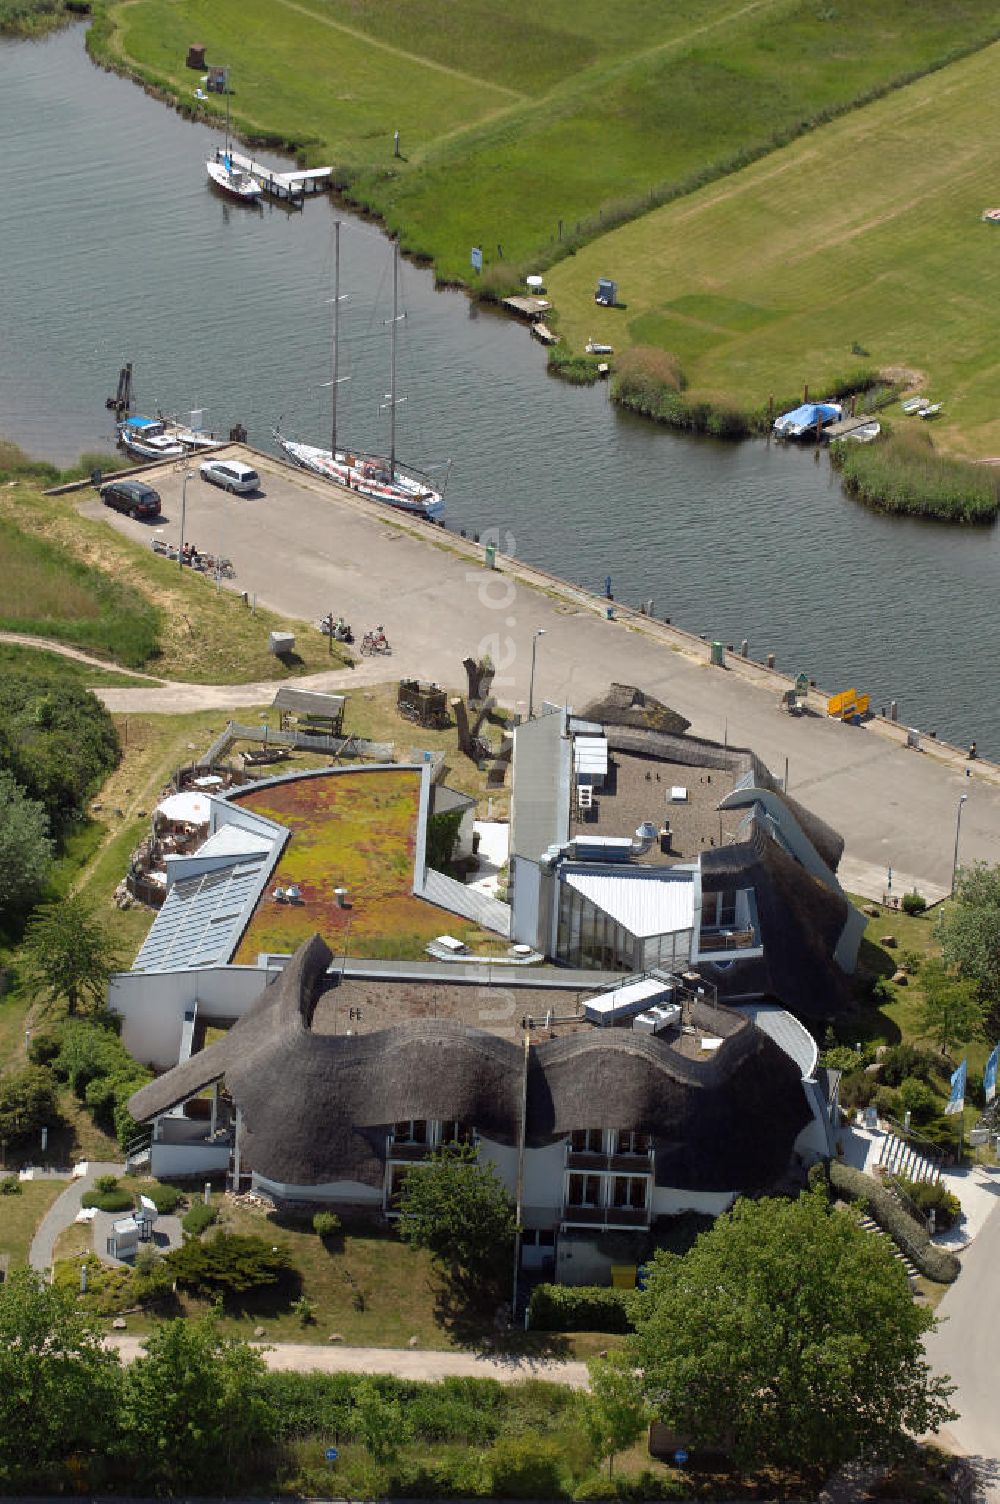 Luftbild Baabe - Hotel Solthus am See auf der Insel Rügen im Ostseebad Baabe